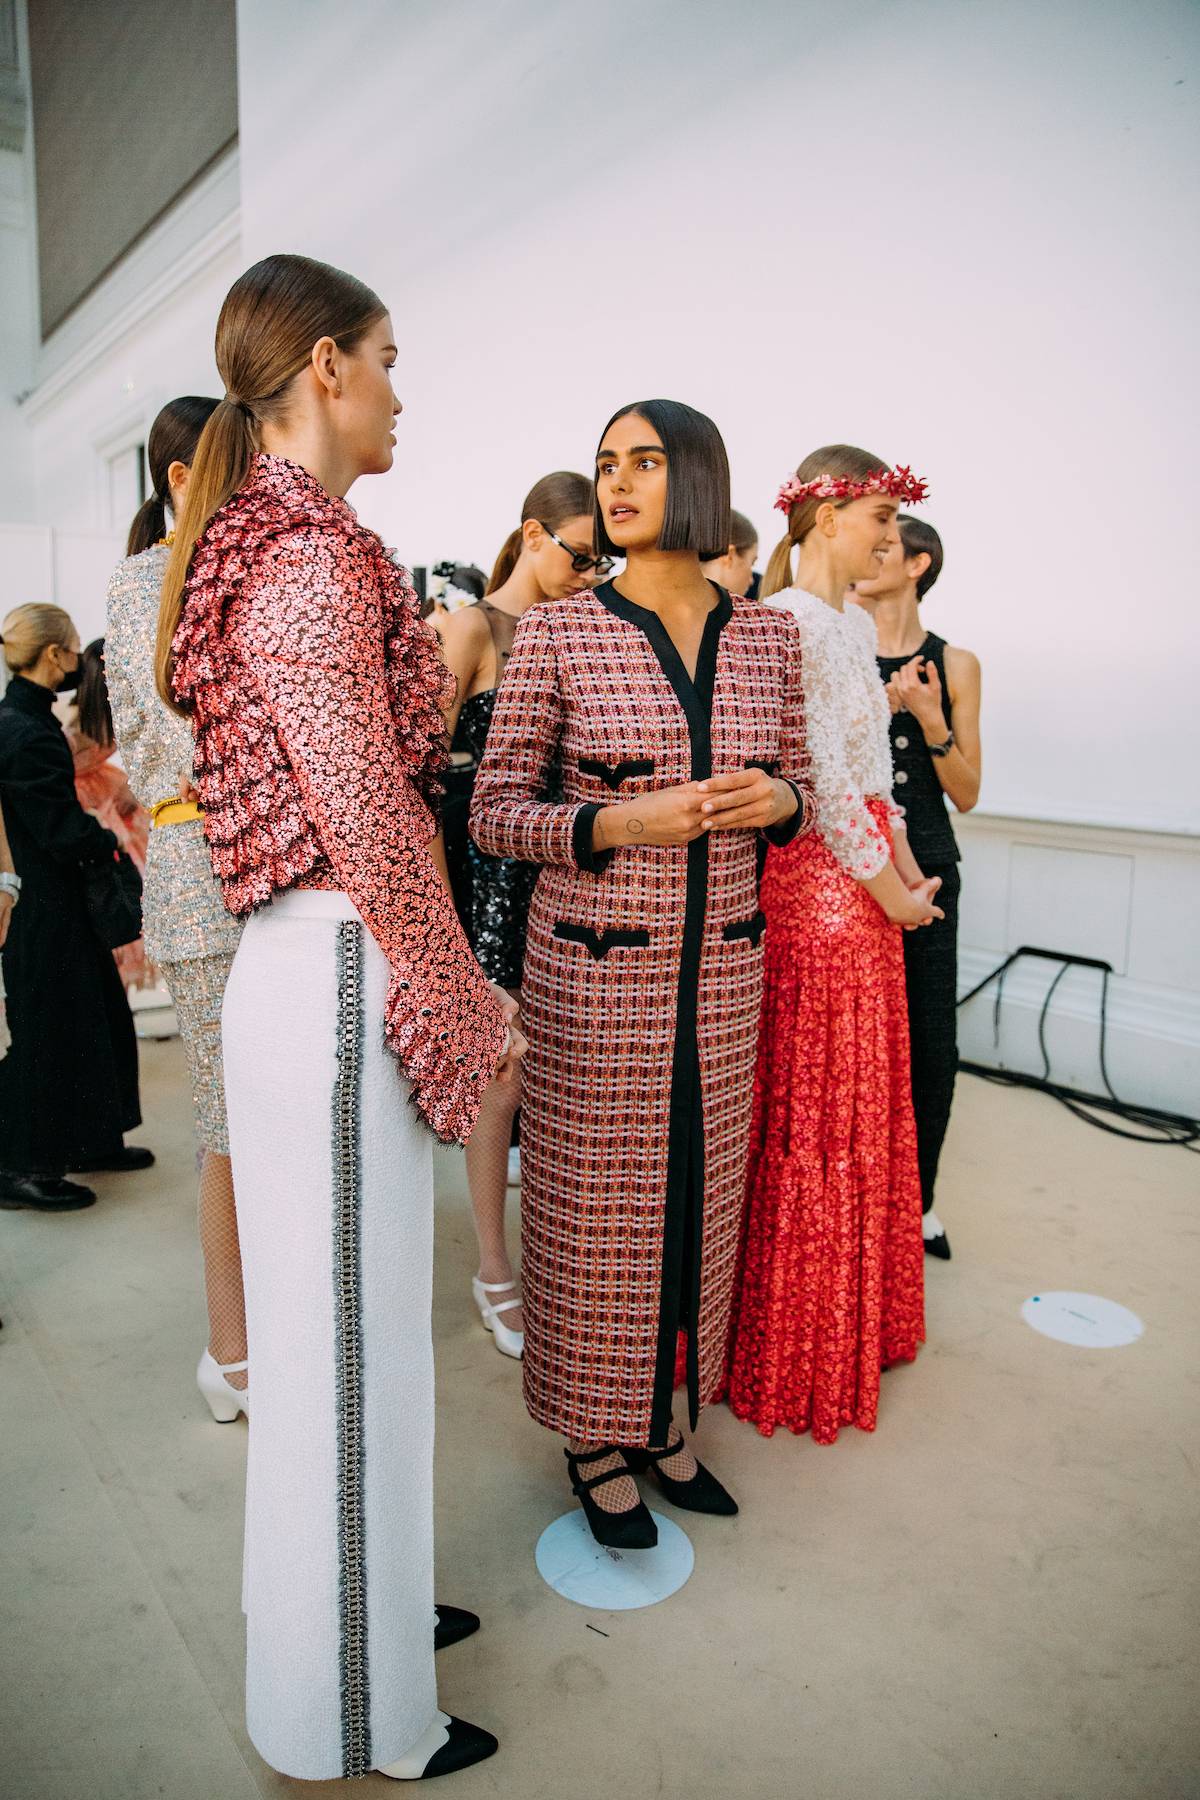 Chanel Couture wiosna 2021 / Fot. Acielle / Style Du Monde